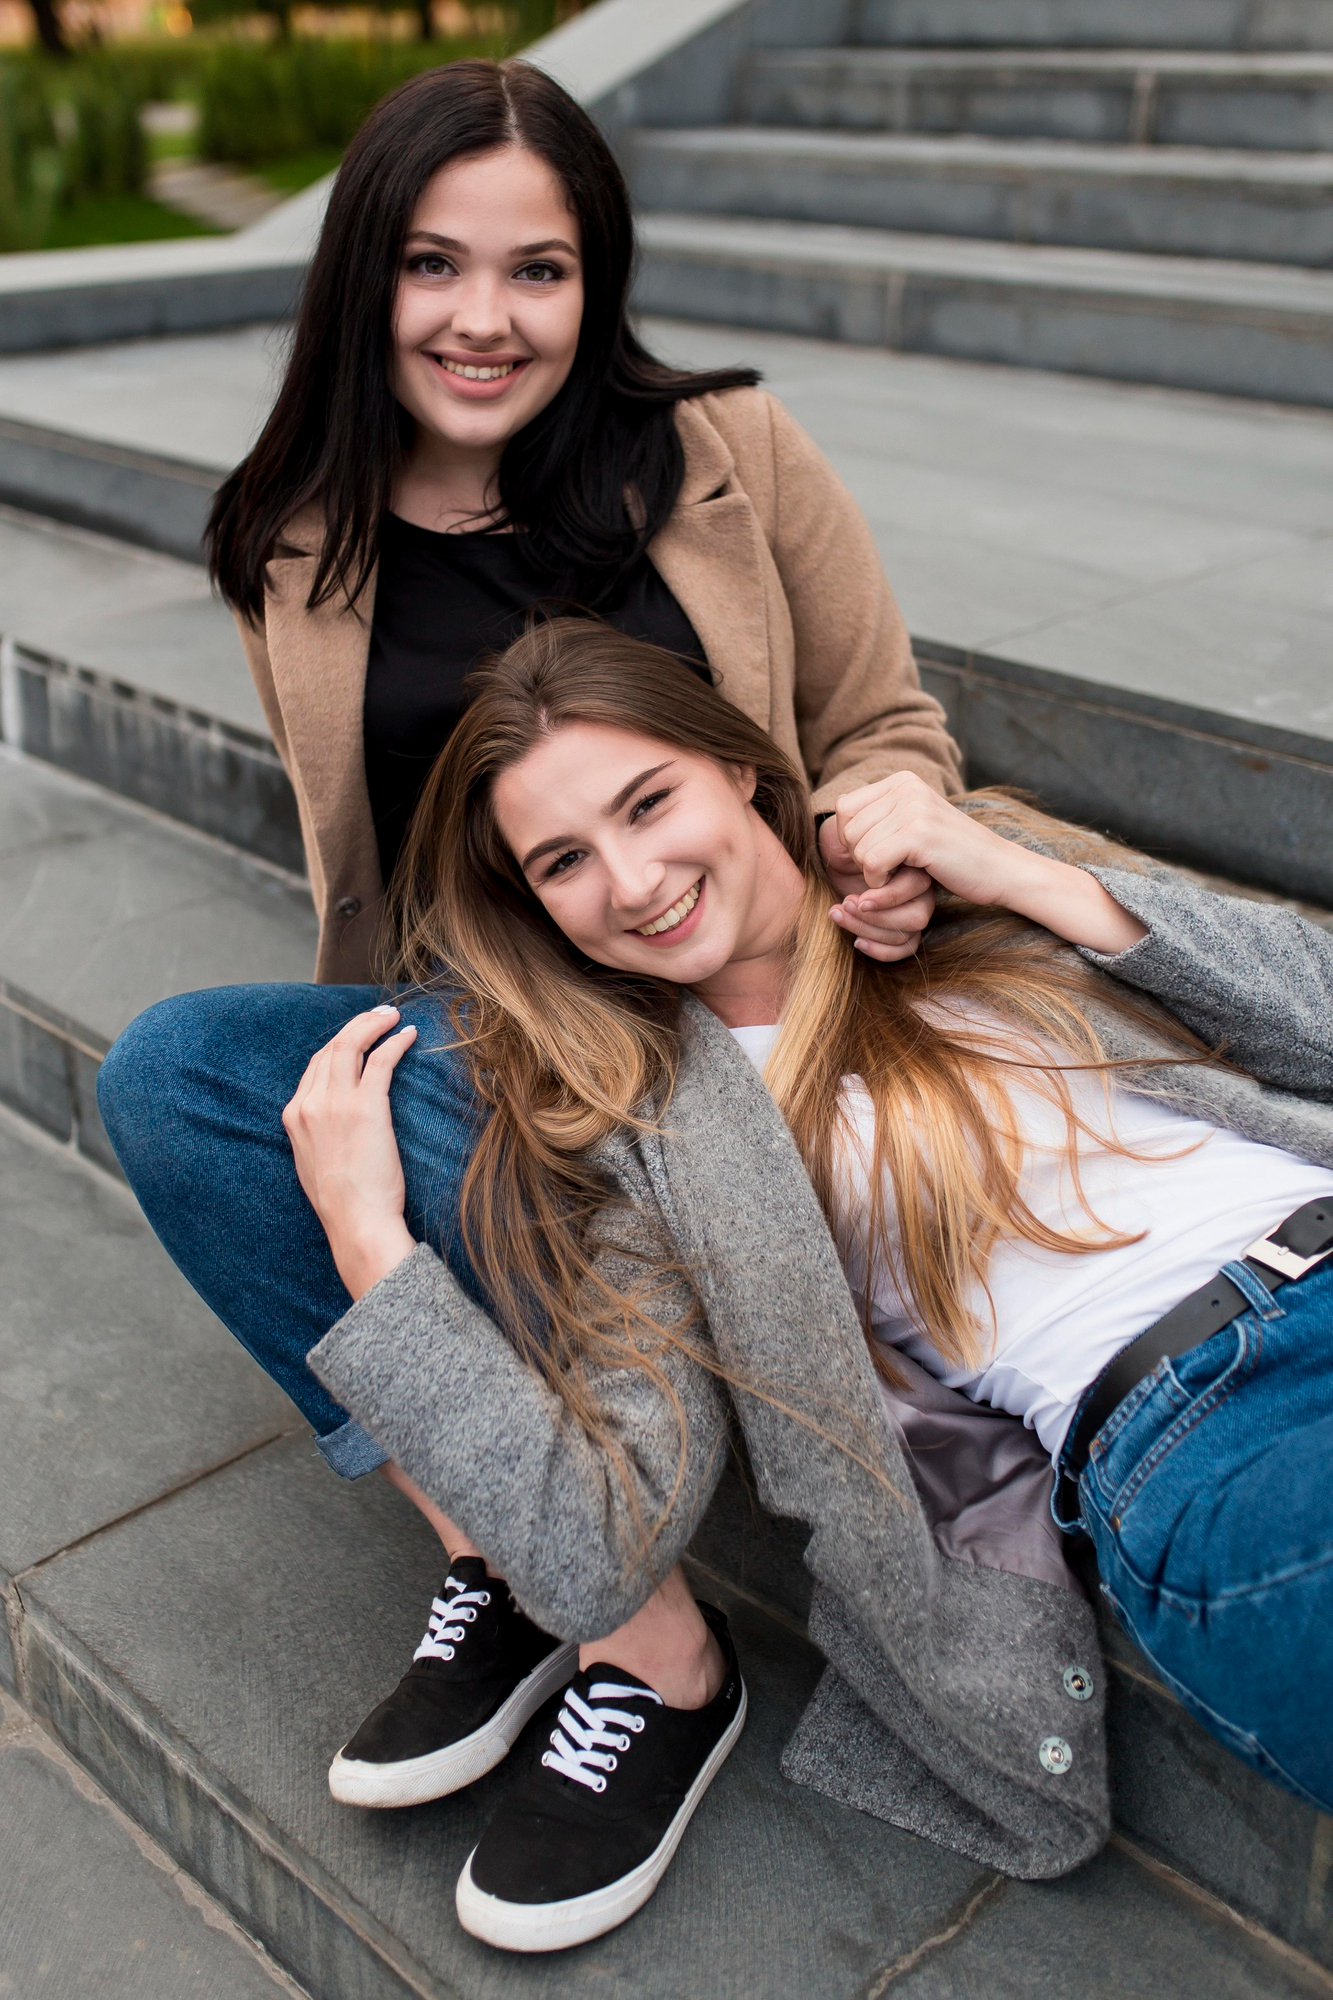 Deux jeunes femmes heureuses se lient d'amitié à l'extérieur sur des escaliers | Source : Freepik